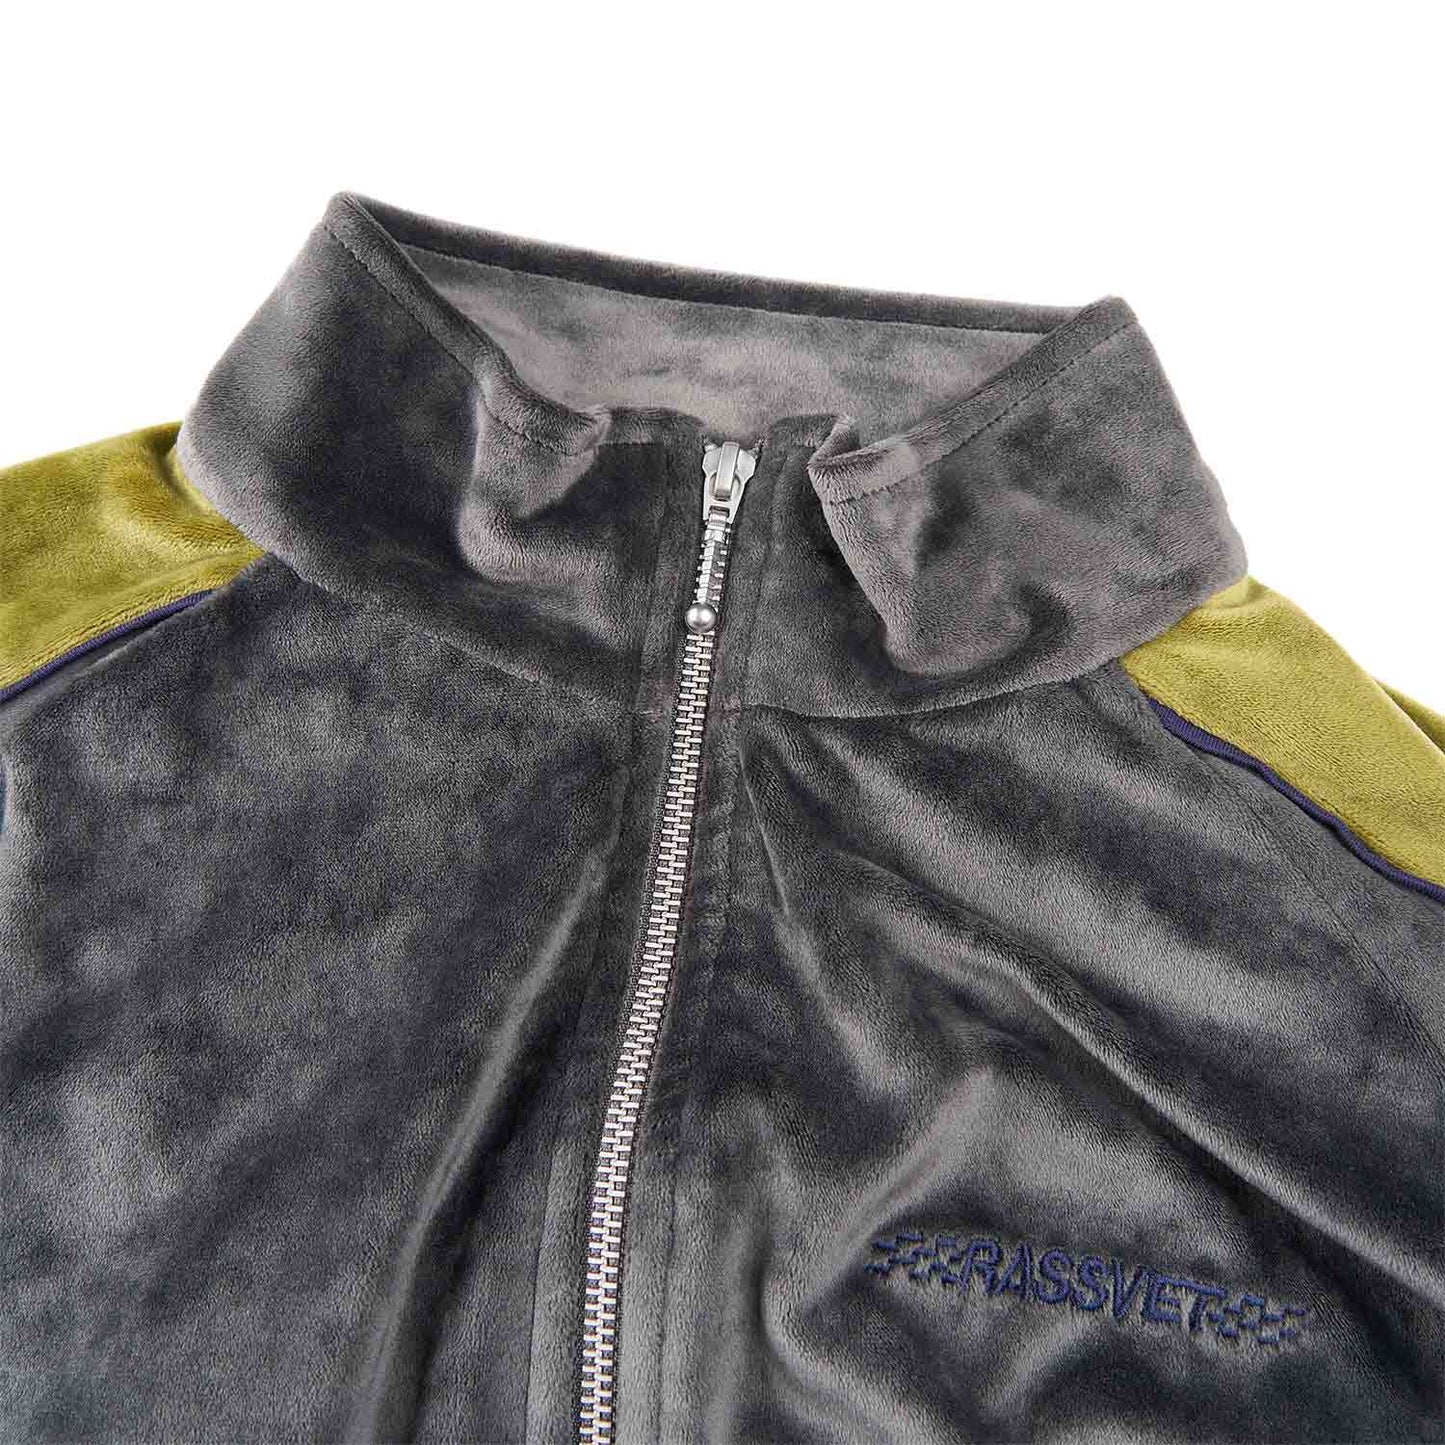 rassvet racer zip jacket (grey / green)